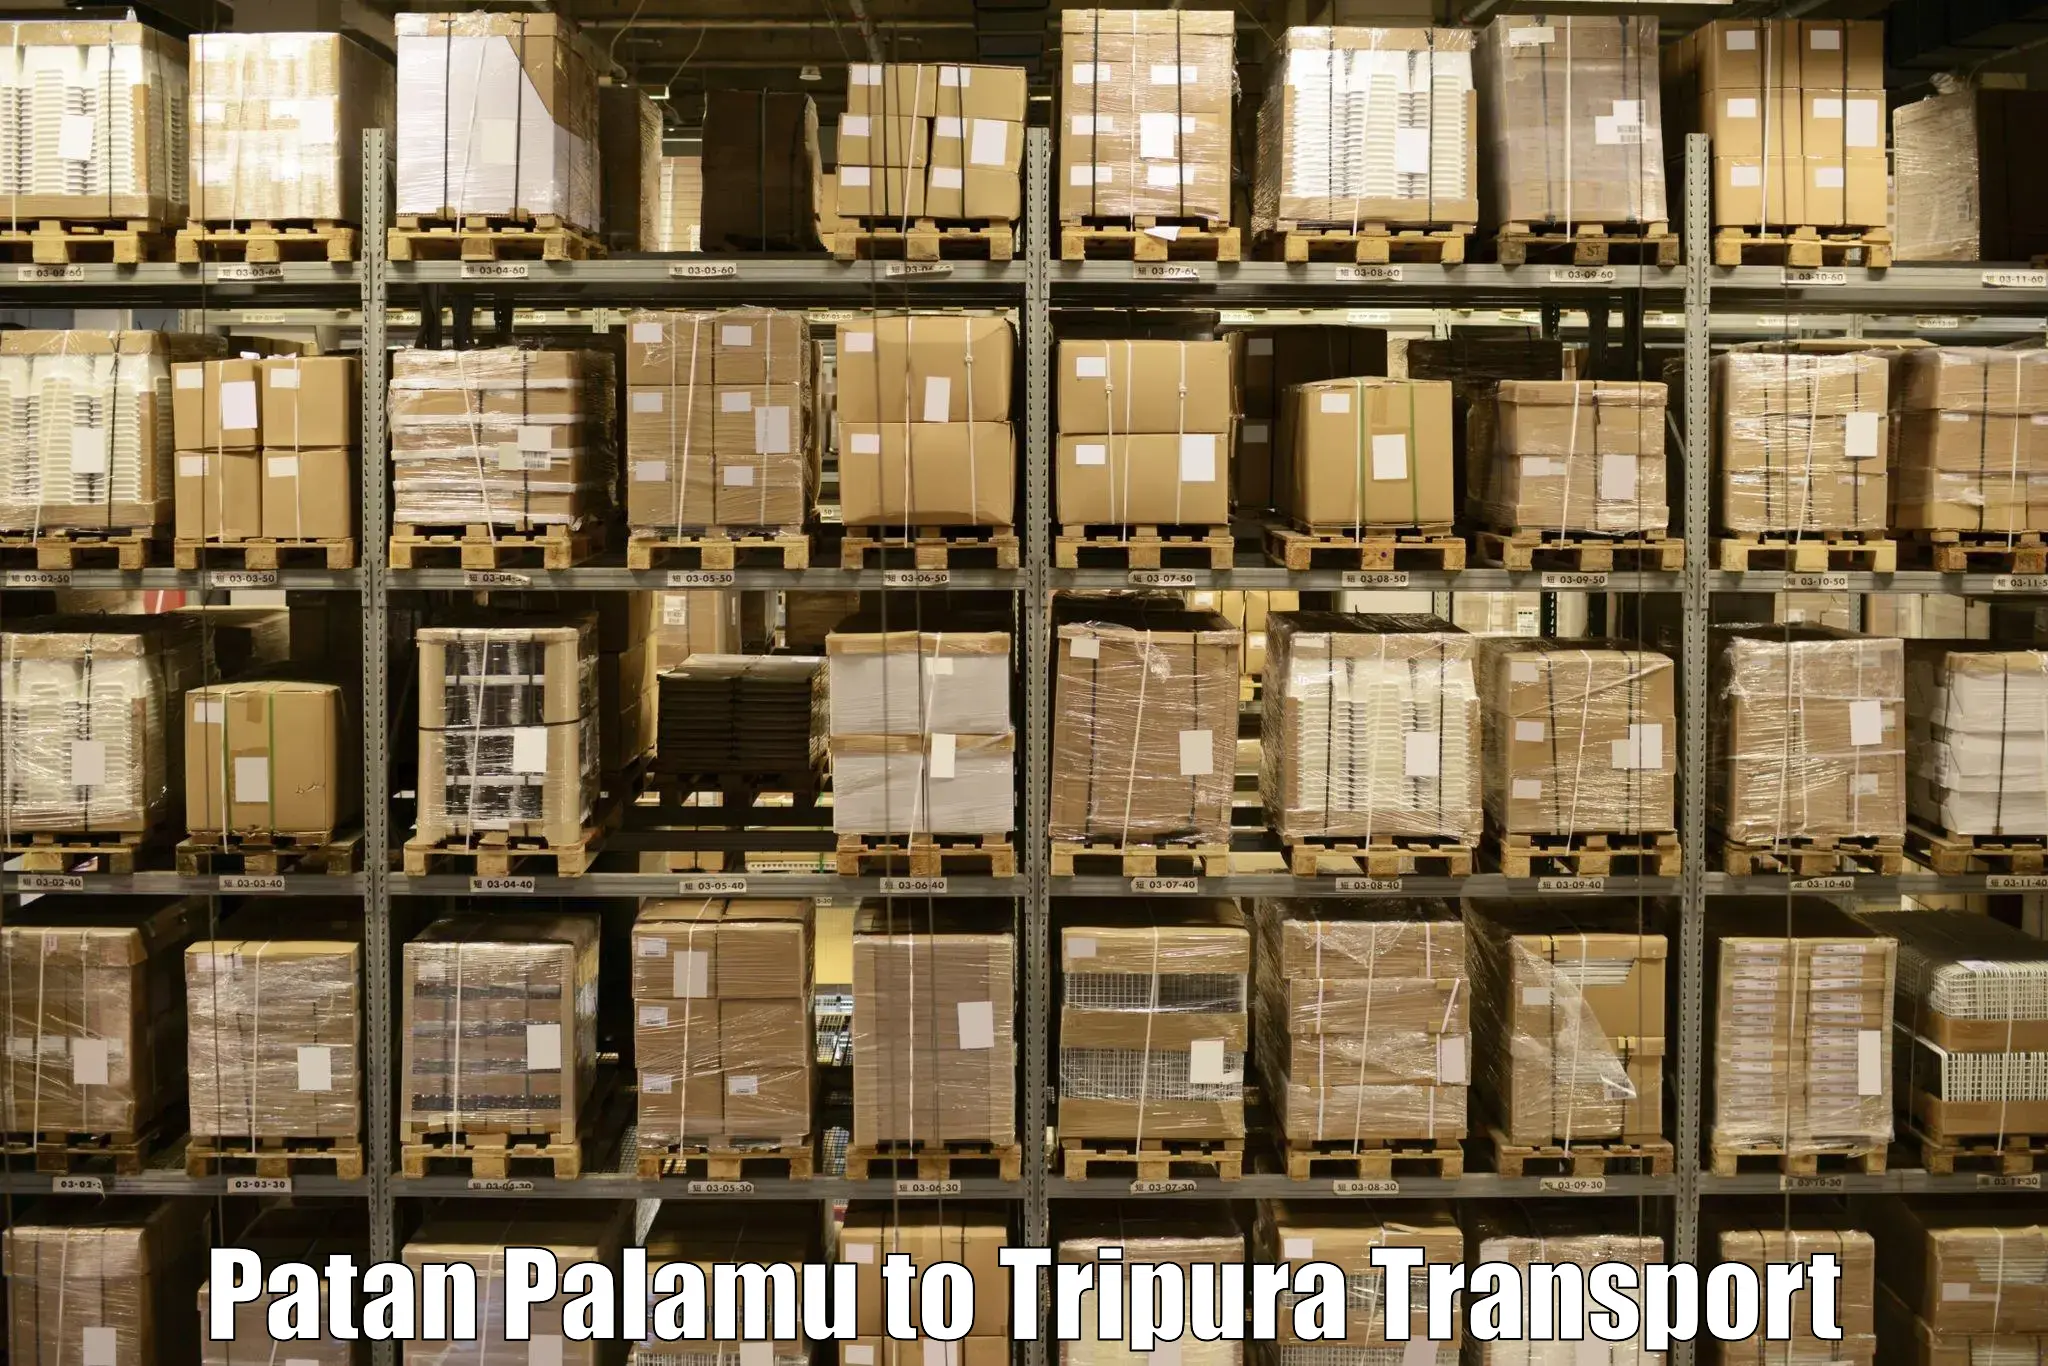 Online transport Patan Palamu to Udaipur Tripura